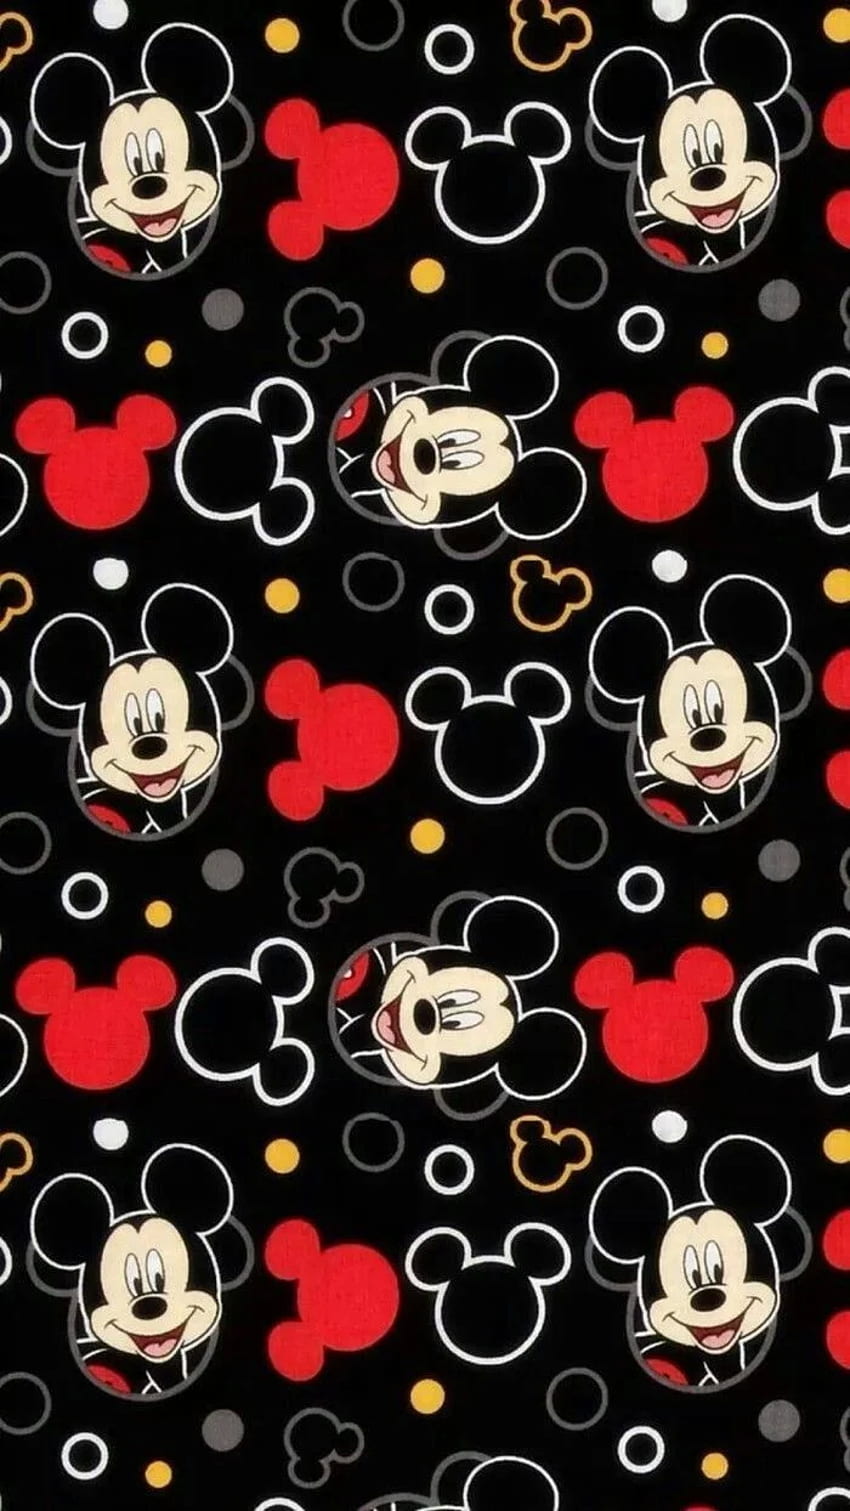 HD Wallpapers với nền đen tối làm nổi bật hình ảnh chú chuột Mickey đầy cuốn hút. Bạn sẽ cảm nhận được sự mạnh mẽ, bí ẩn trong chúng và đem lại cho bạn cảm giác tươi mới cho ngày mới.